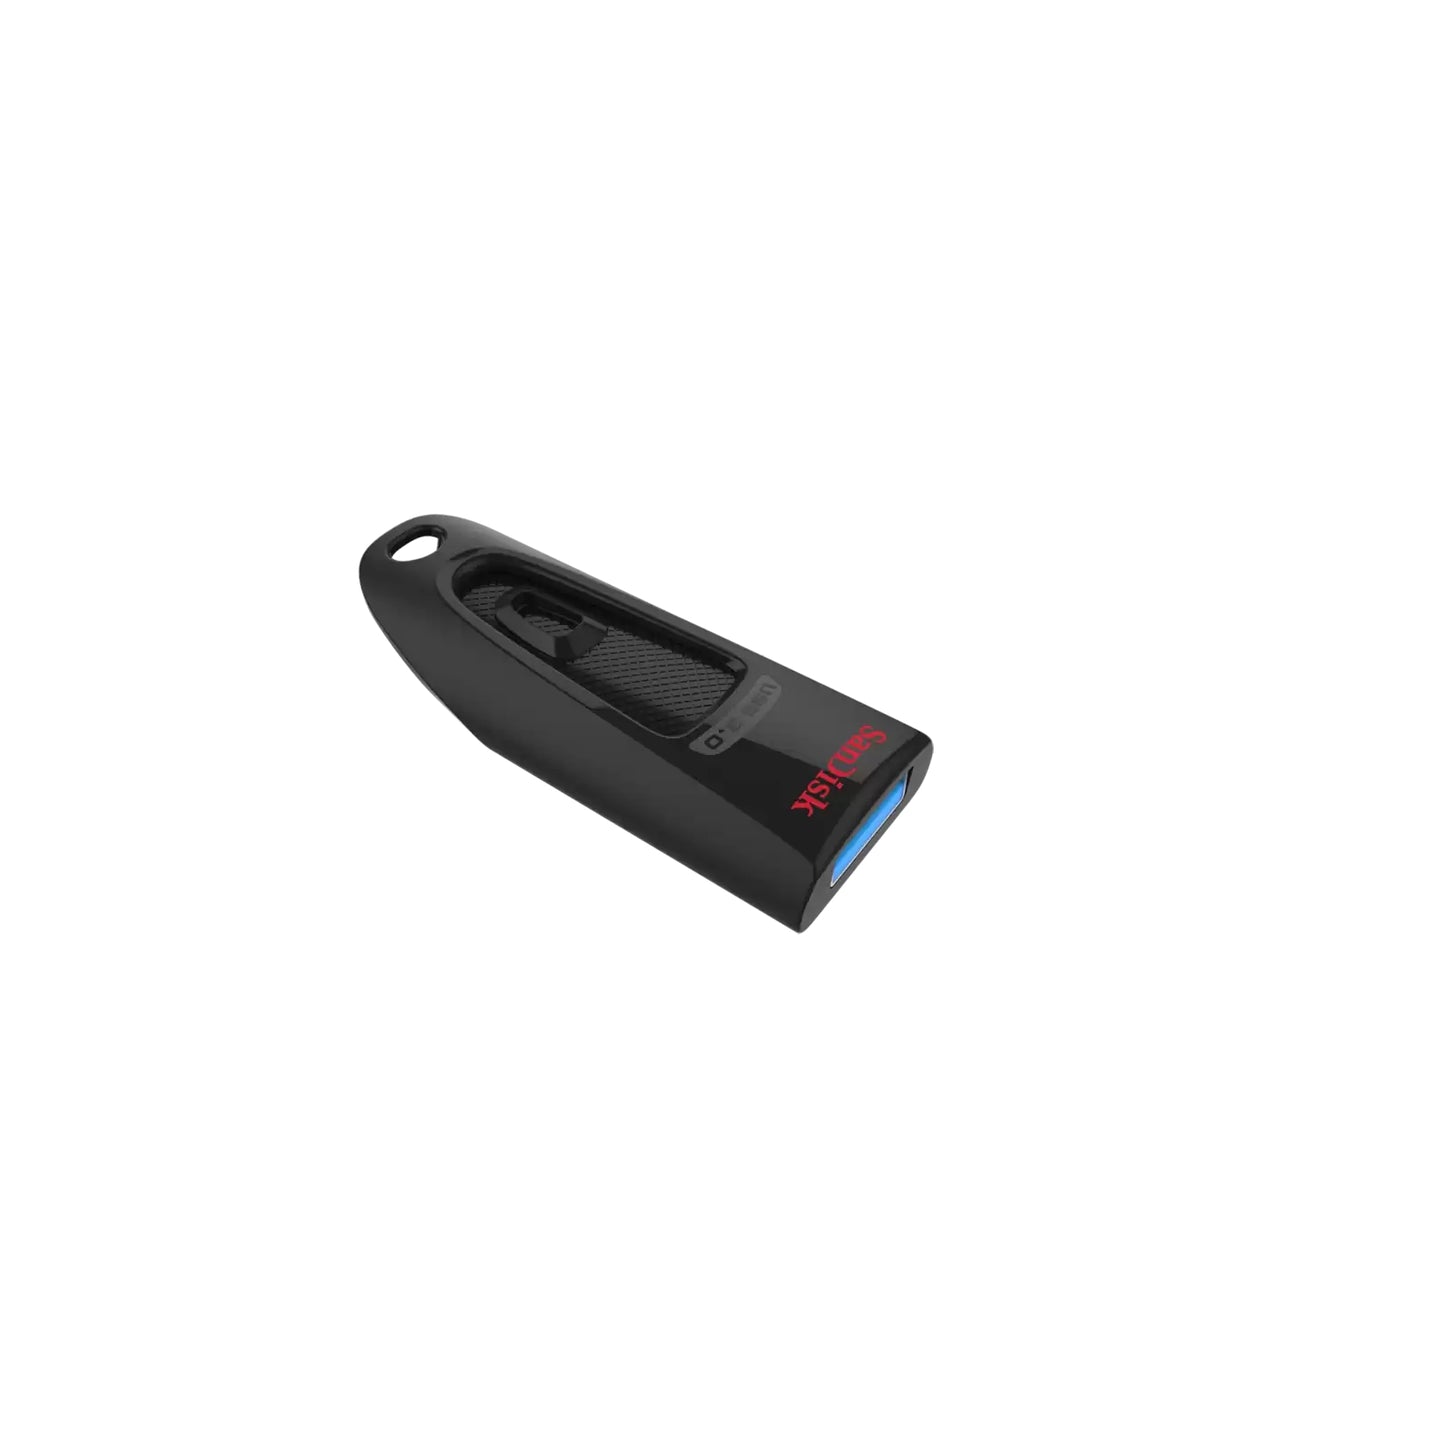 SanDisk Ultra CZ48 32GB 130MB/S USB 3.0 Flash Drive Memory Stick Pen PC MAC